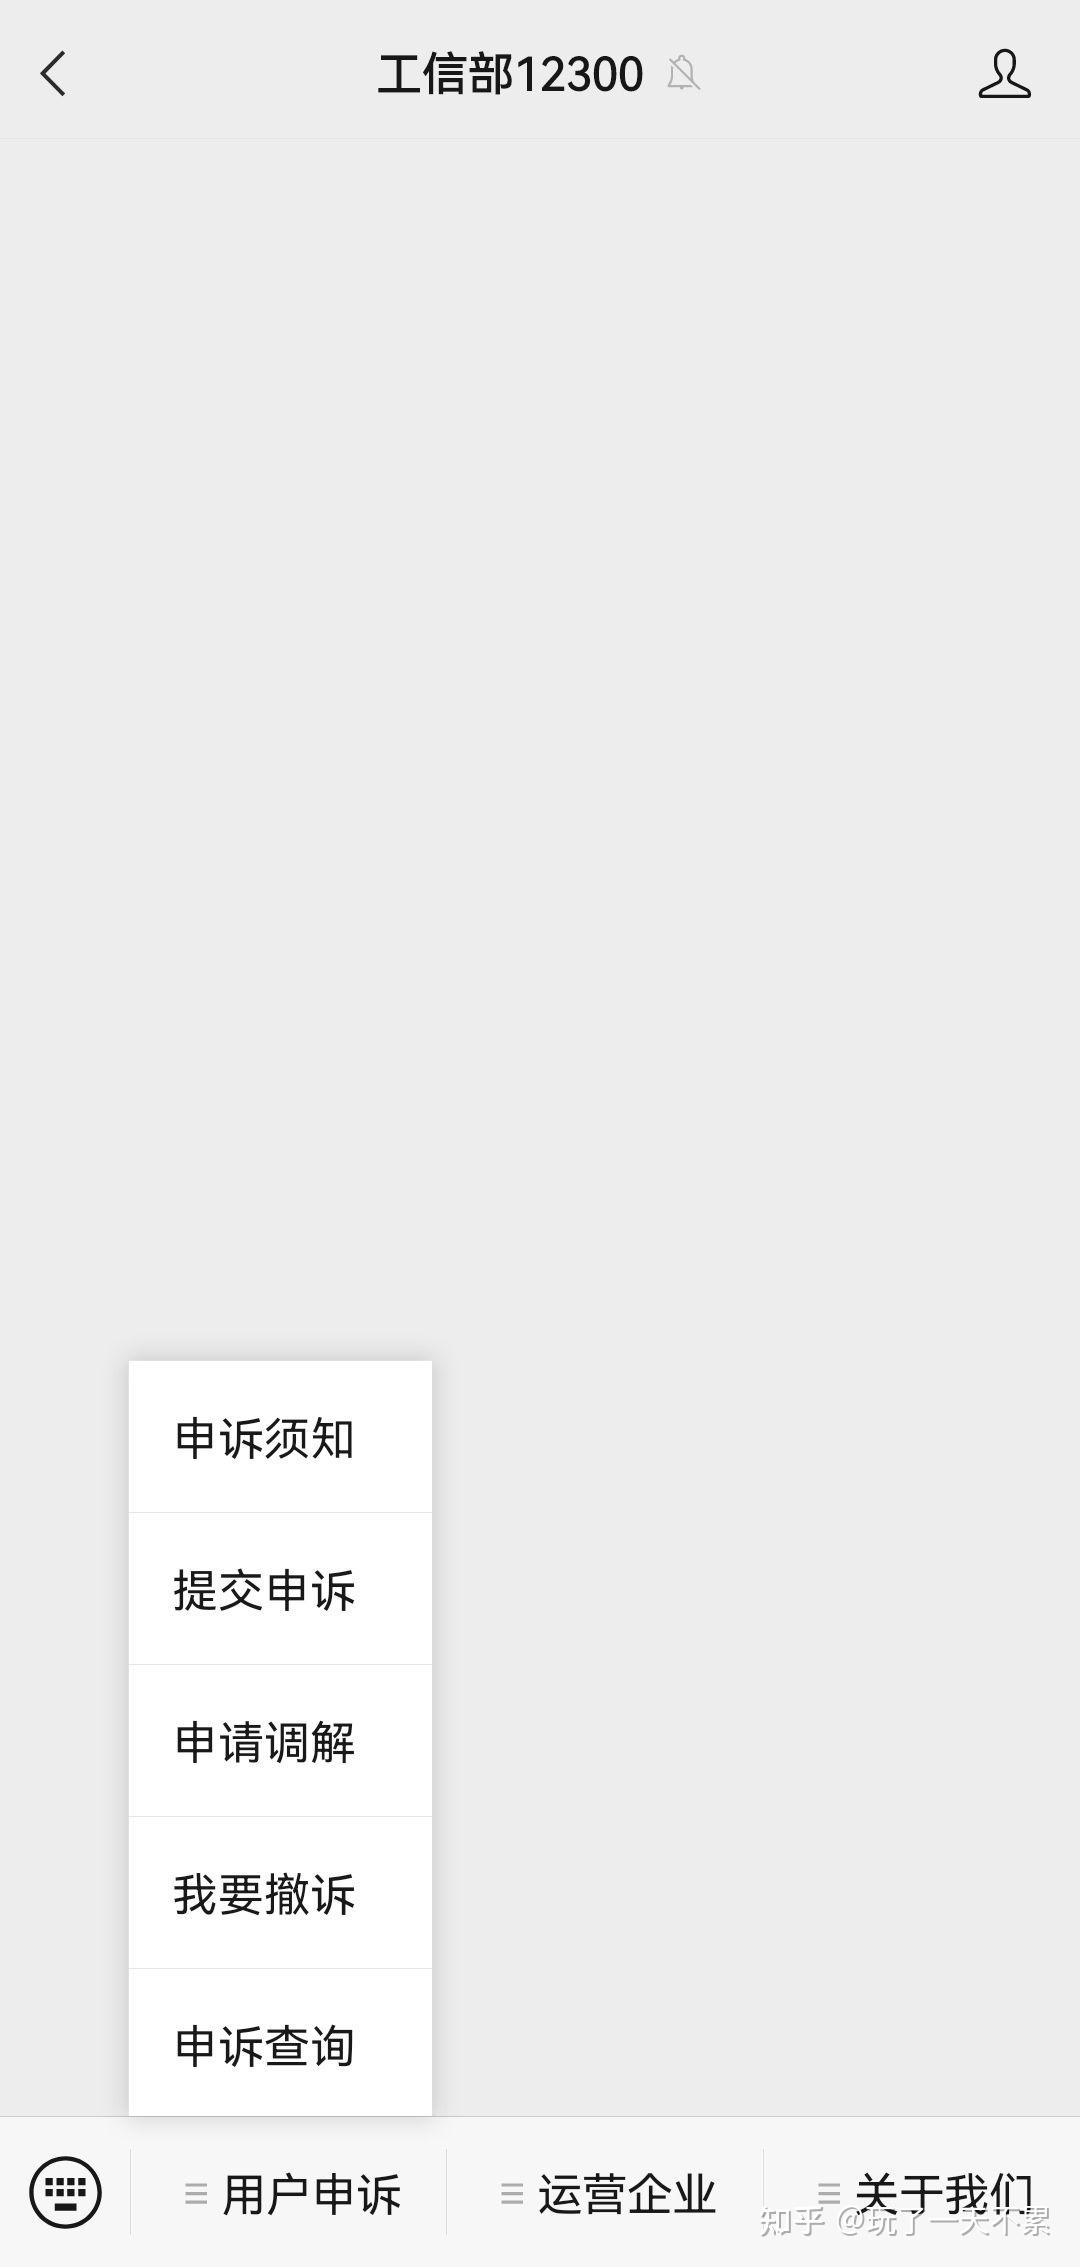 投诉中国移动内部人员-群众呼声-四川省网上群众工作平台-成都市委书记